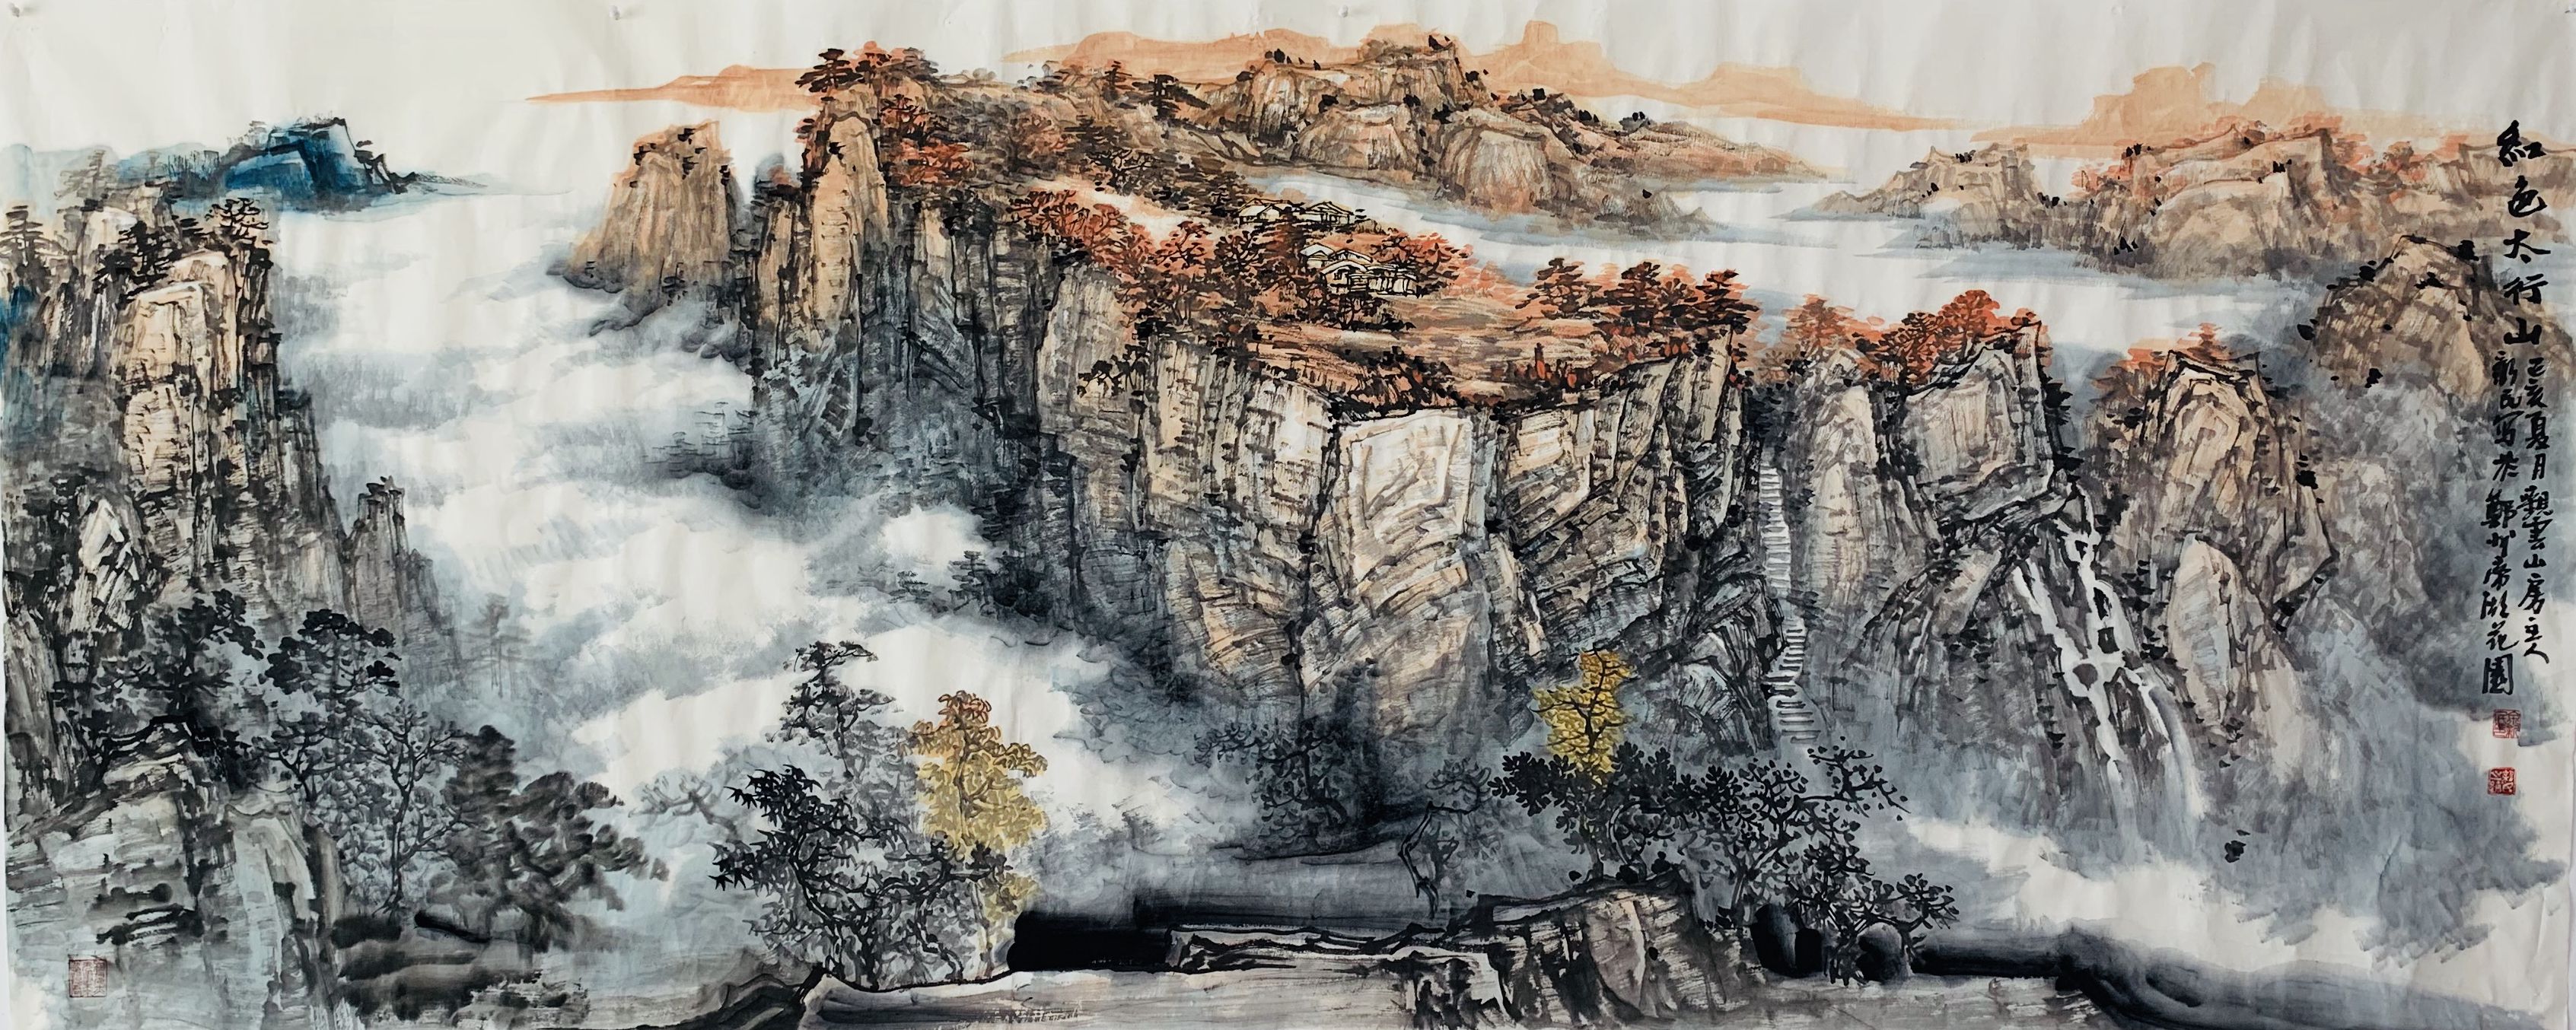 中国画名家——画家余新民山水画欣赏